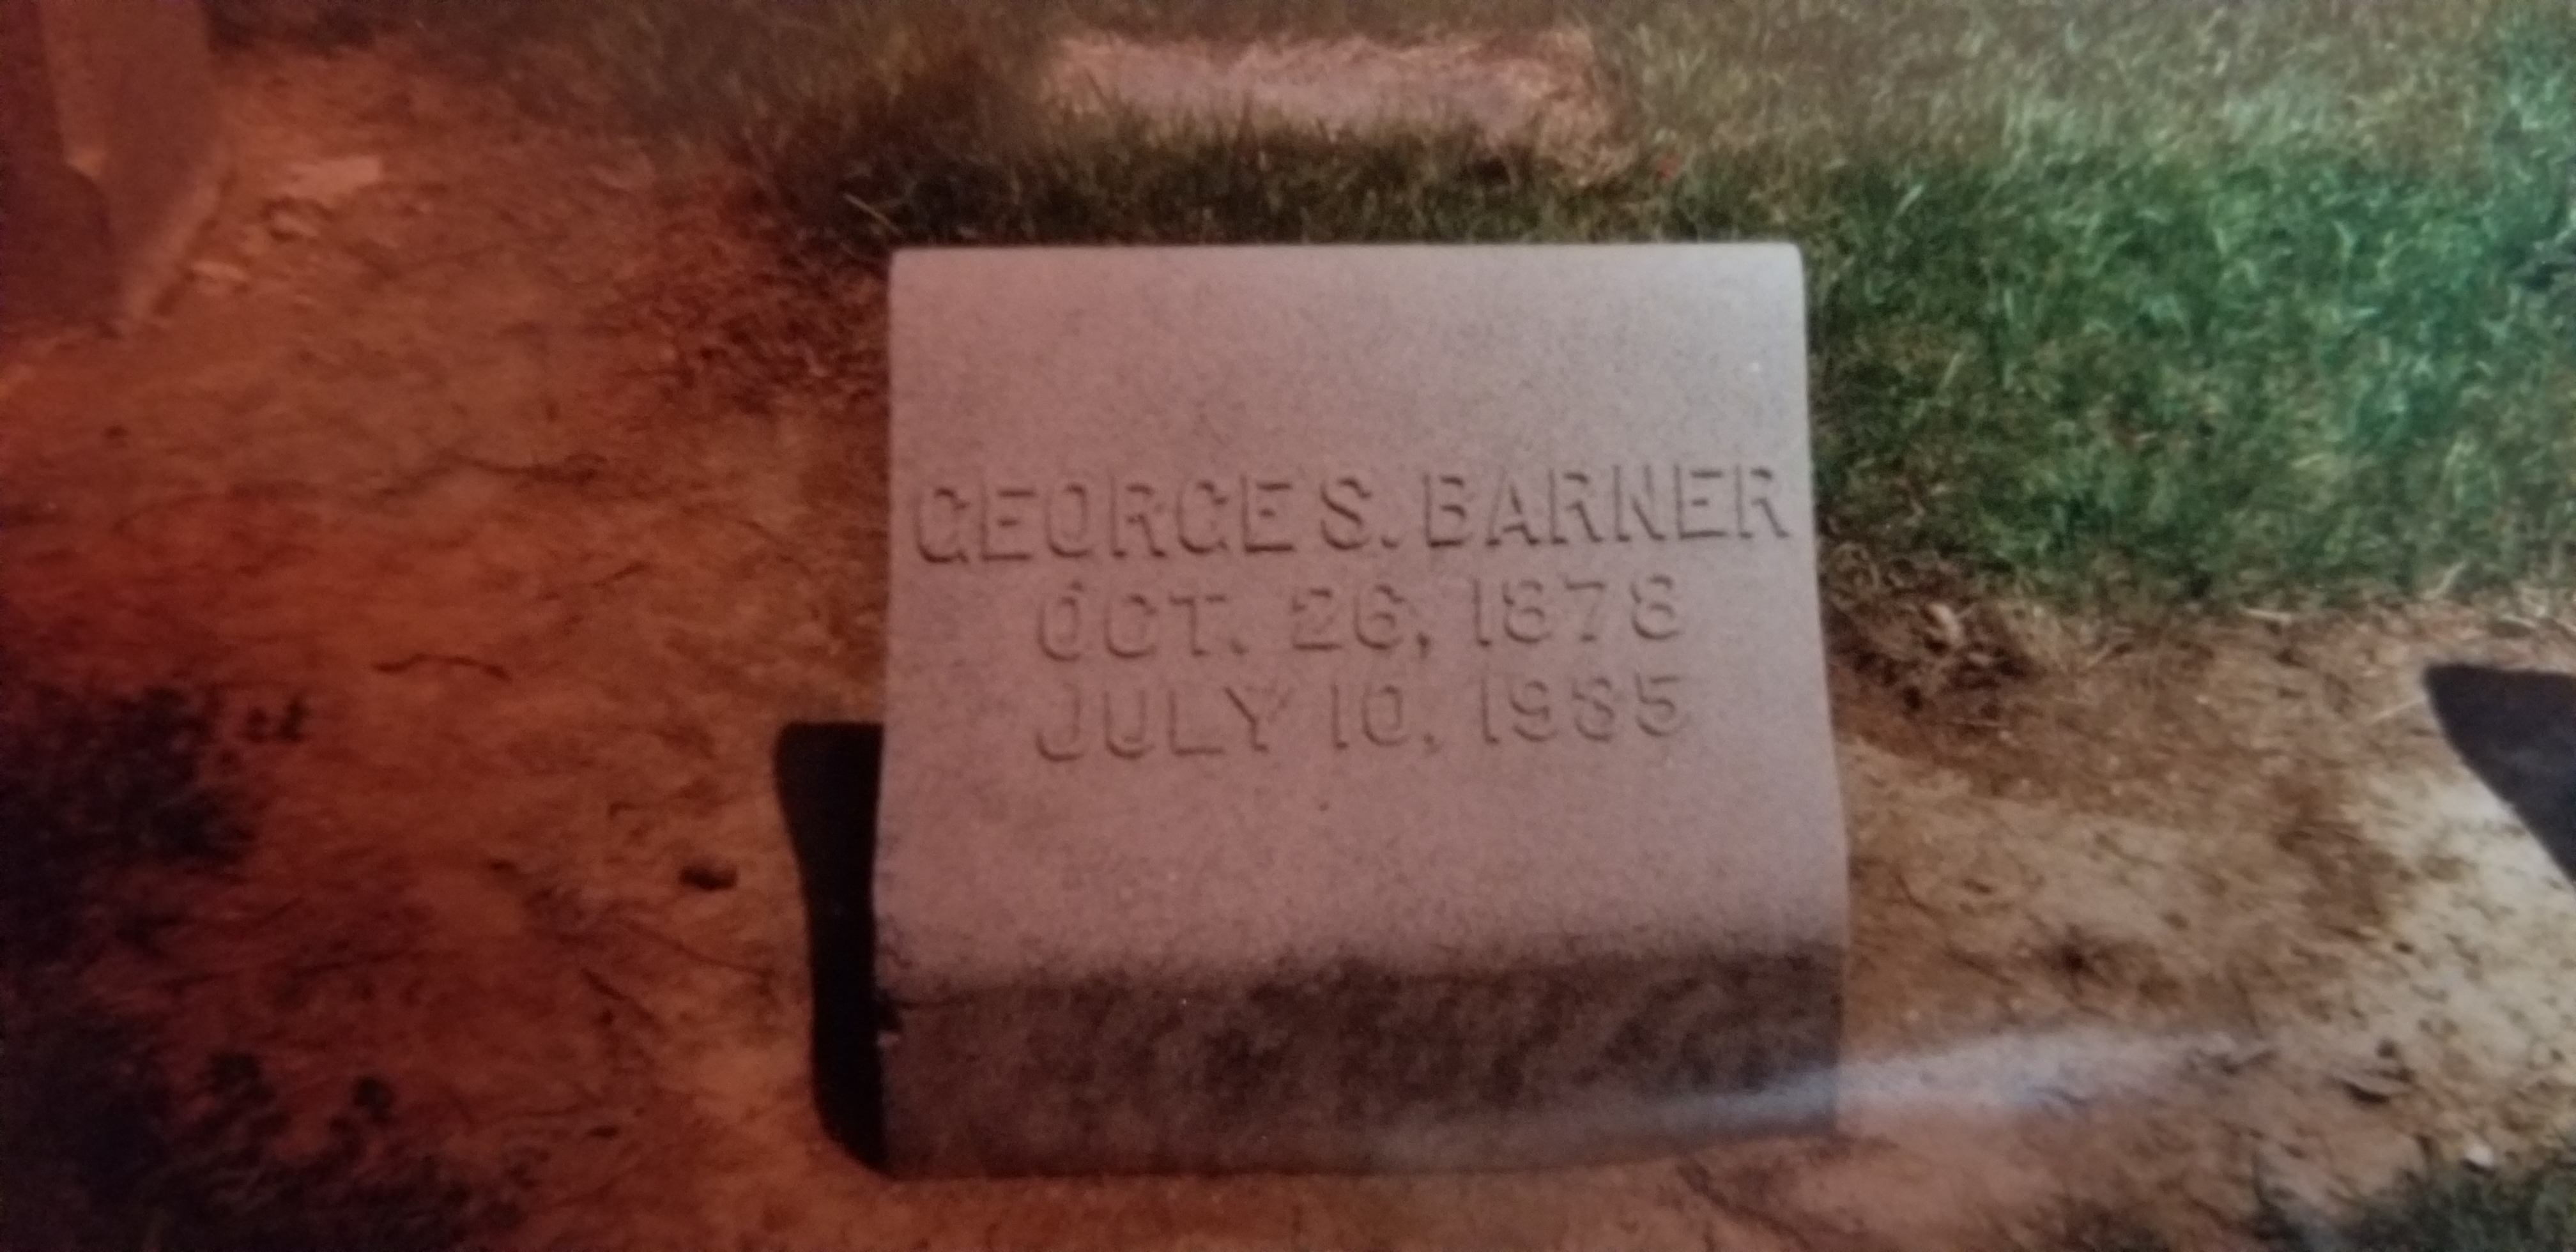 George S. Barner.jpg